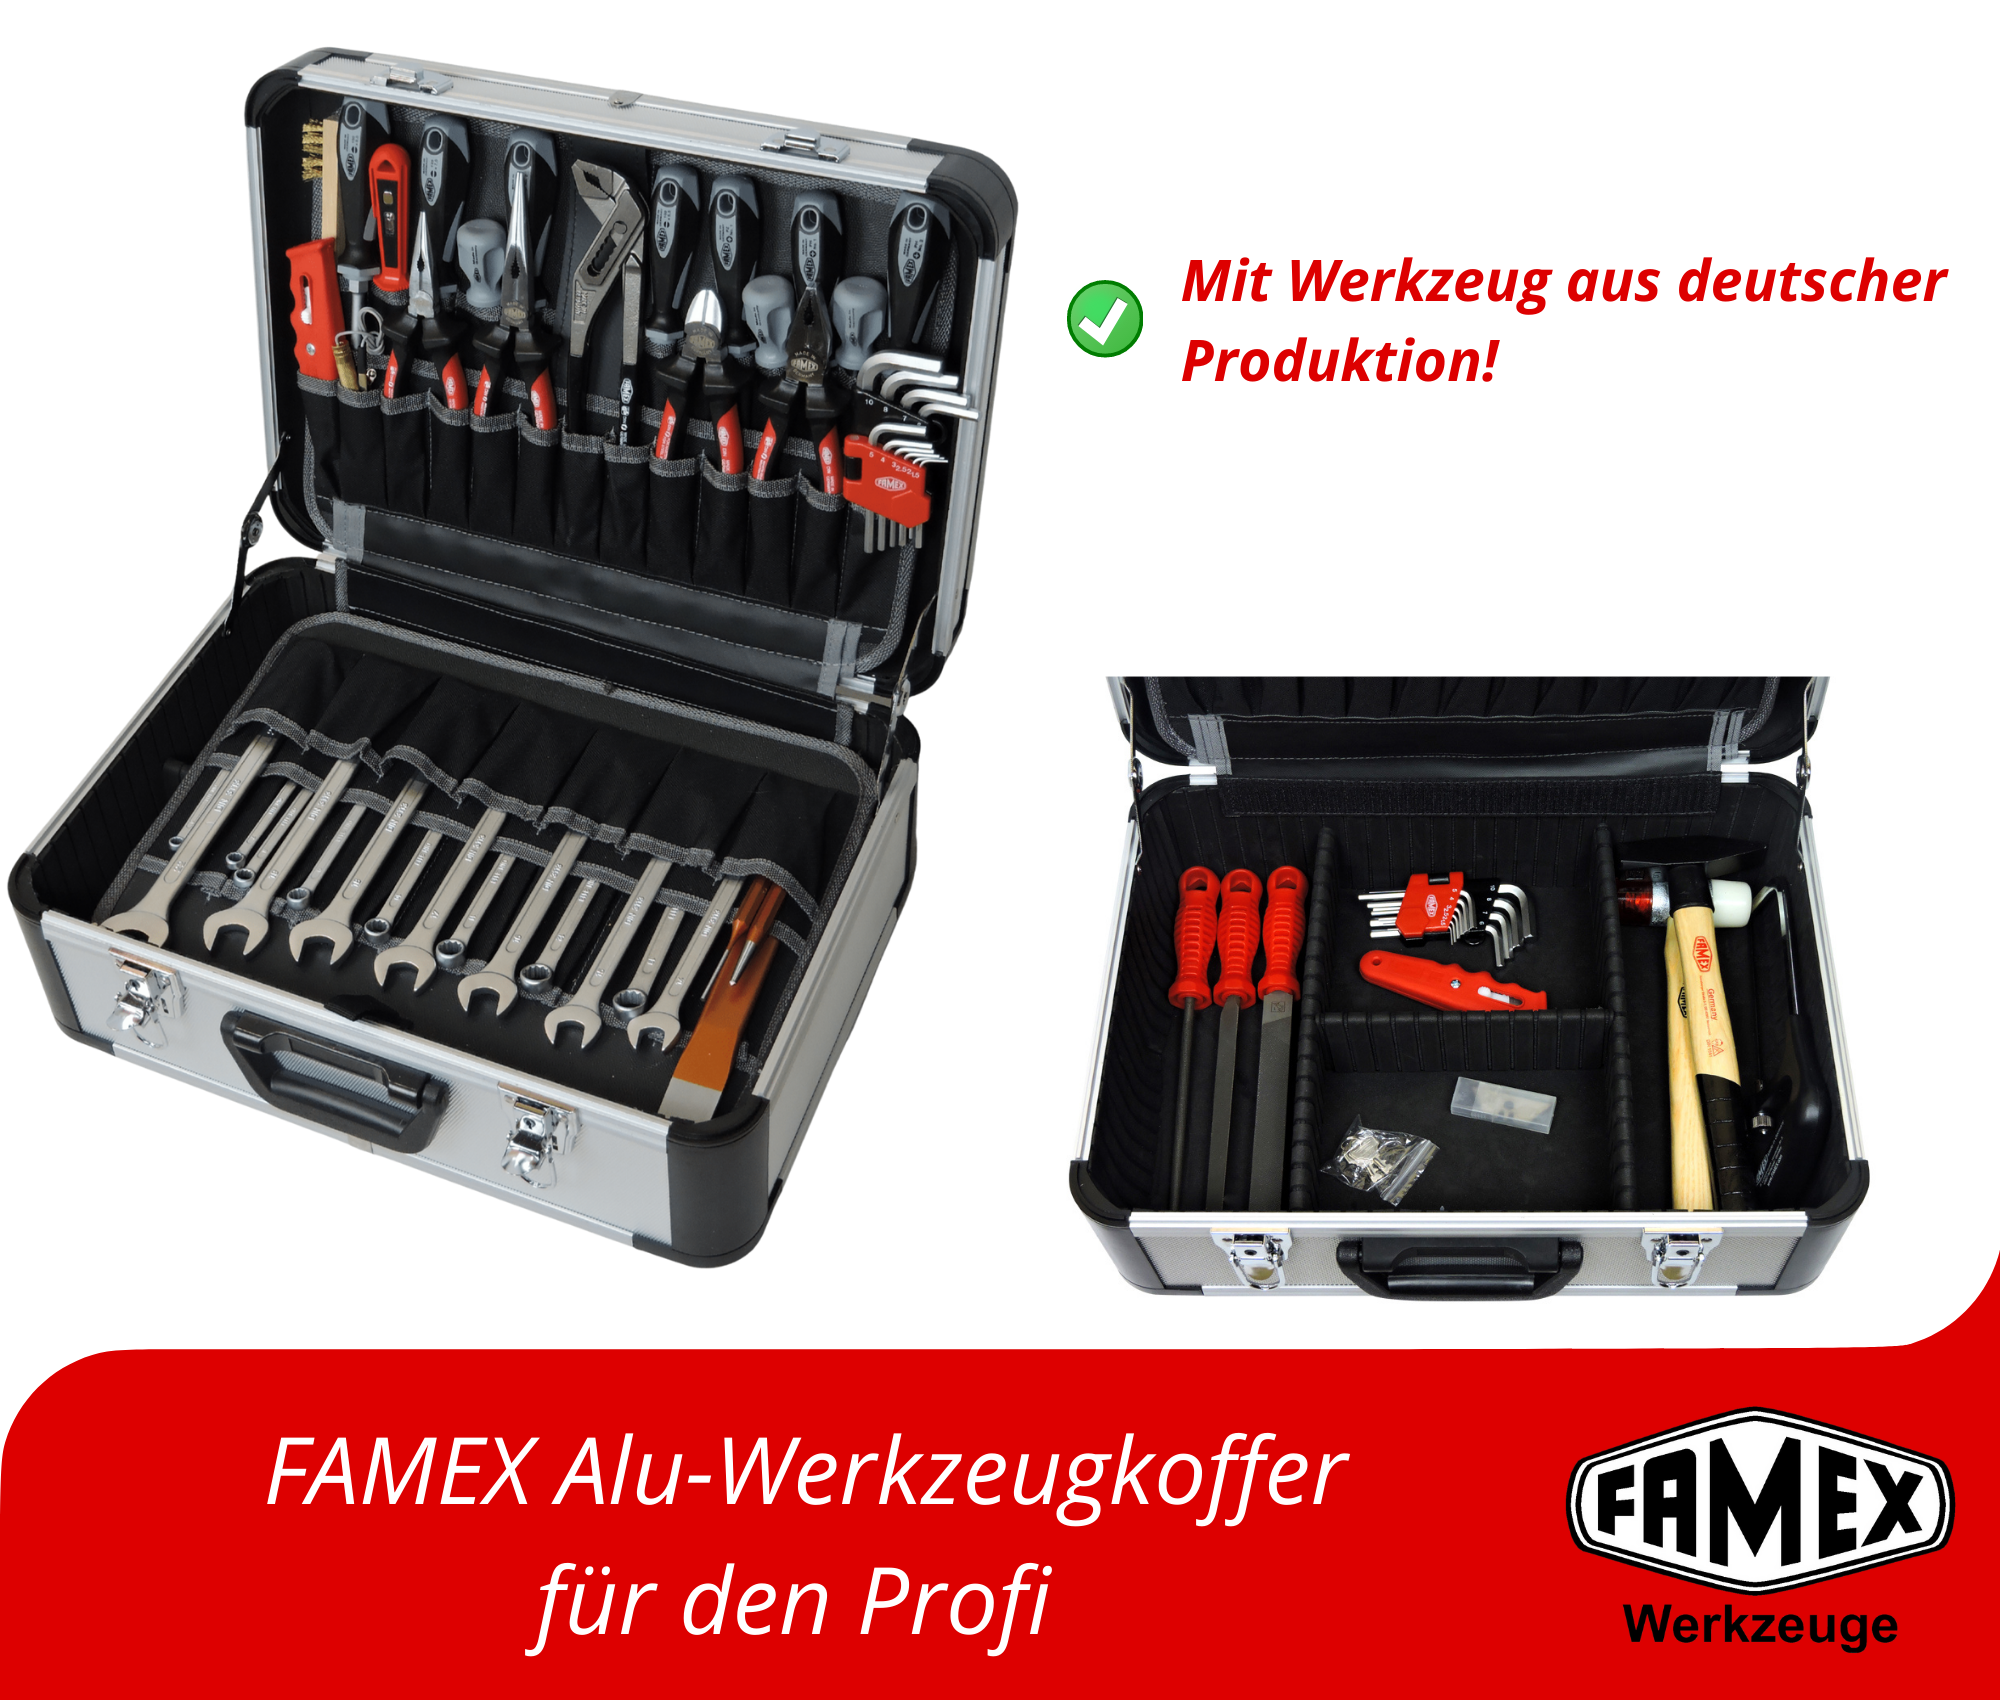 420-18 Werkzeuge online Alu und Steckschlüsselsatz Top Set kaufen FAMEX - Werkzeug Profi Werkzeugkoffer mit günstig